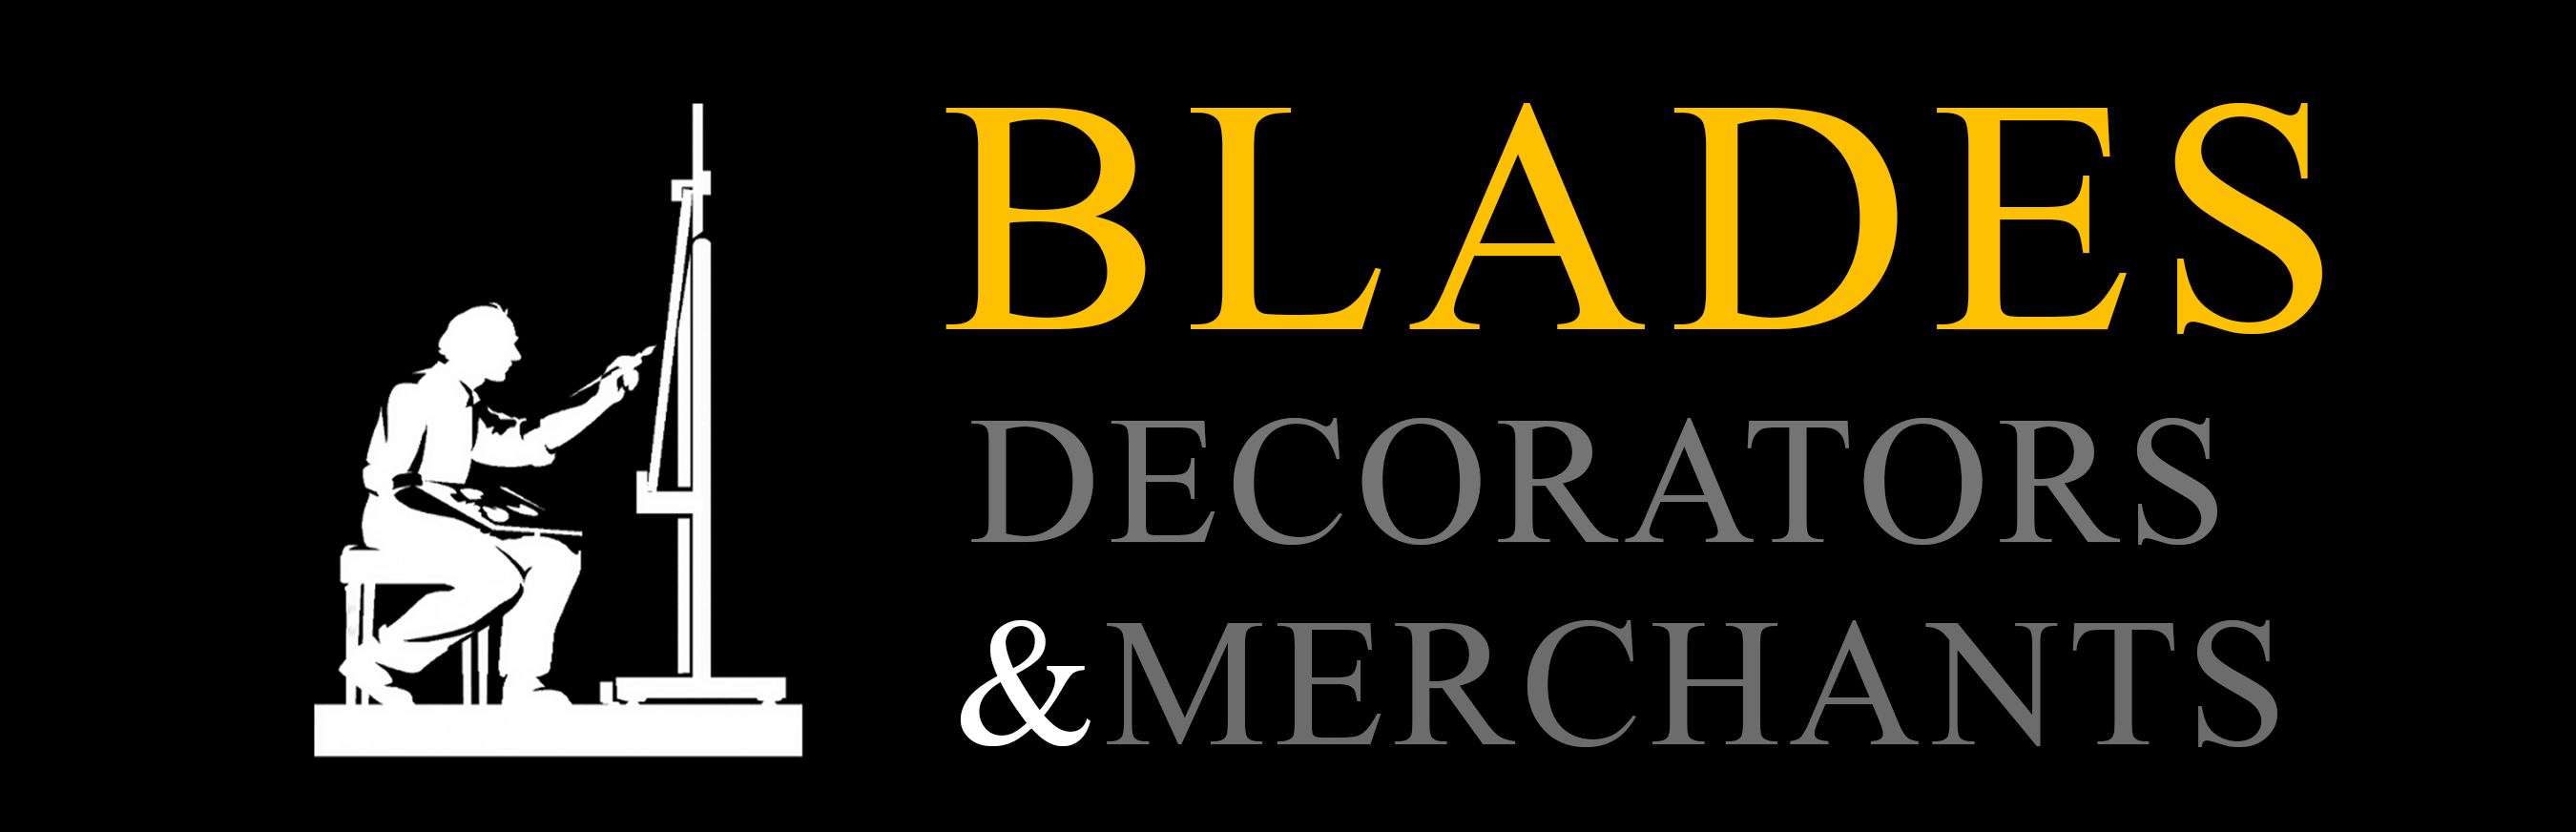 Blades Decorators & Merchants